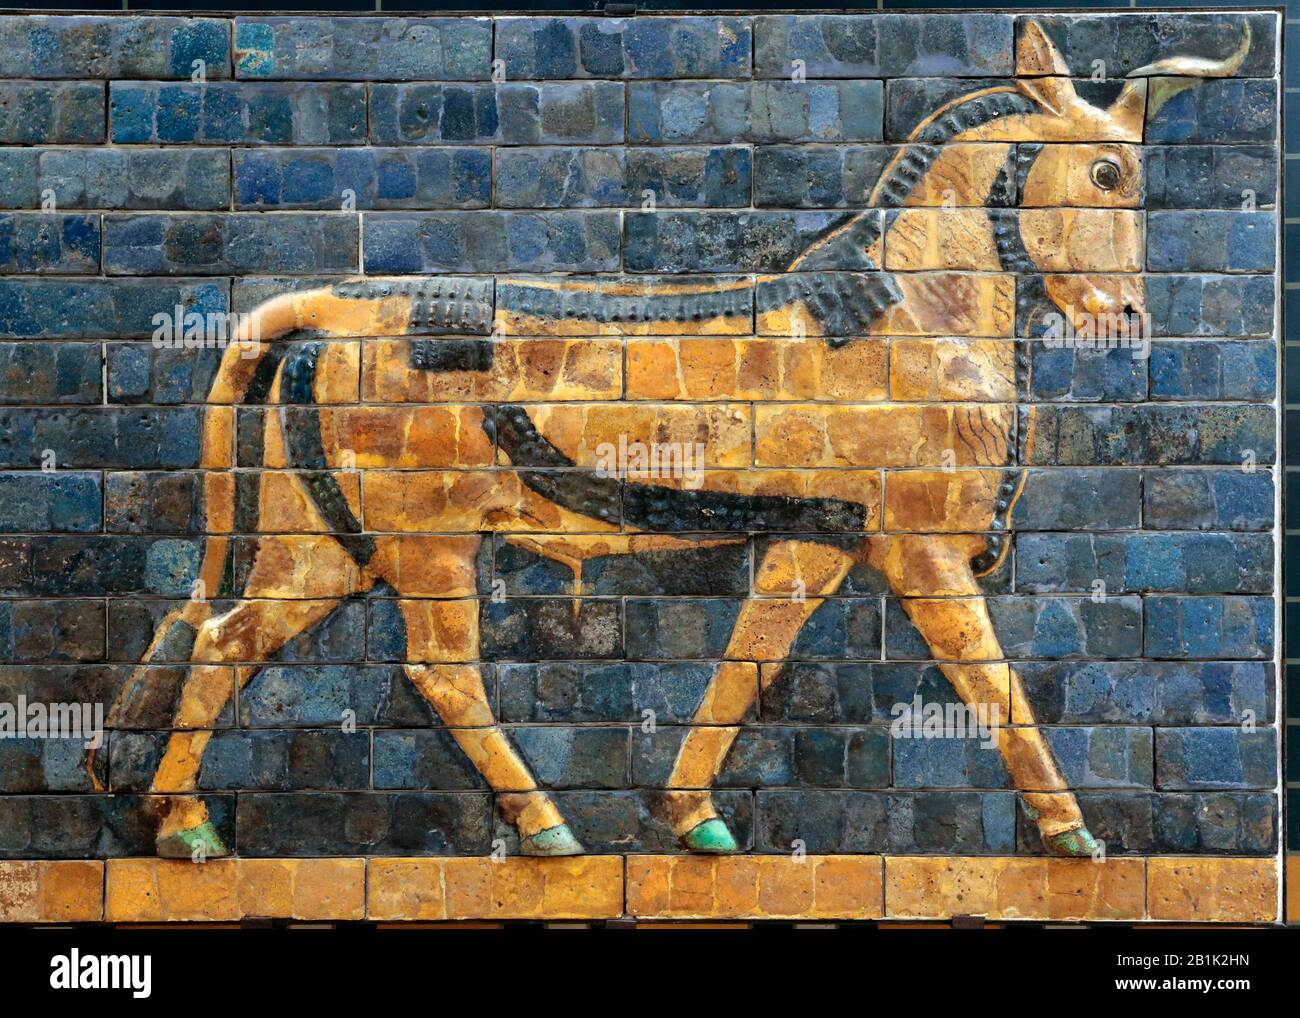 Auerochsen (Bullen). Ishtar-Tor. Babylon. Neo-Babylon. 604-562 V. CHR. Glasierter Brick. Irak. Istanbul Archaeoligical Museum. Türkei. Stockfoto